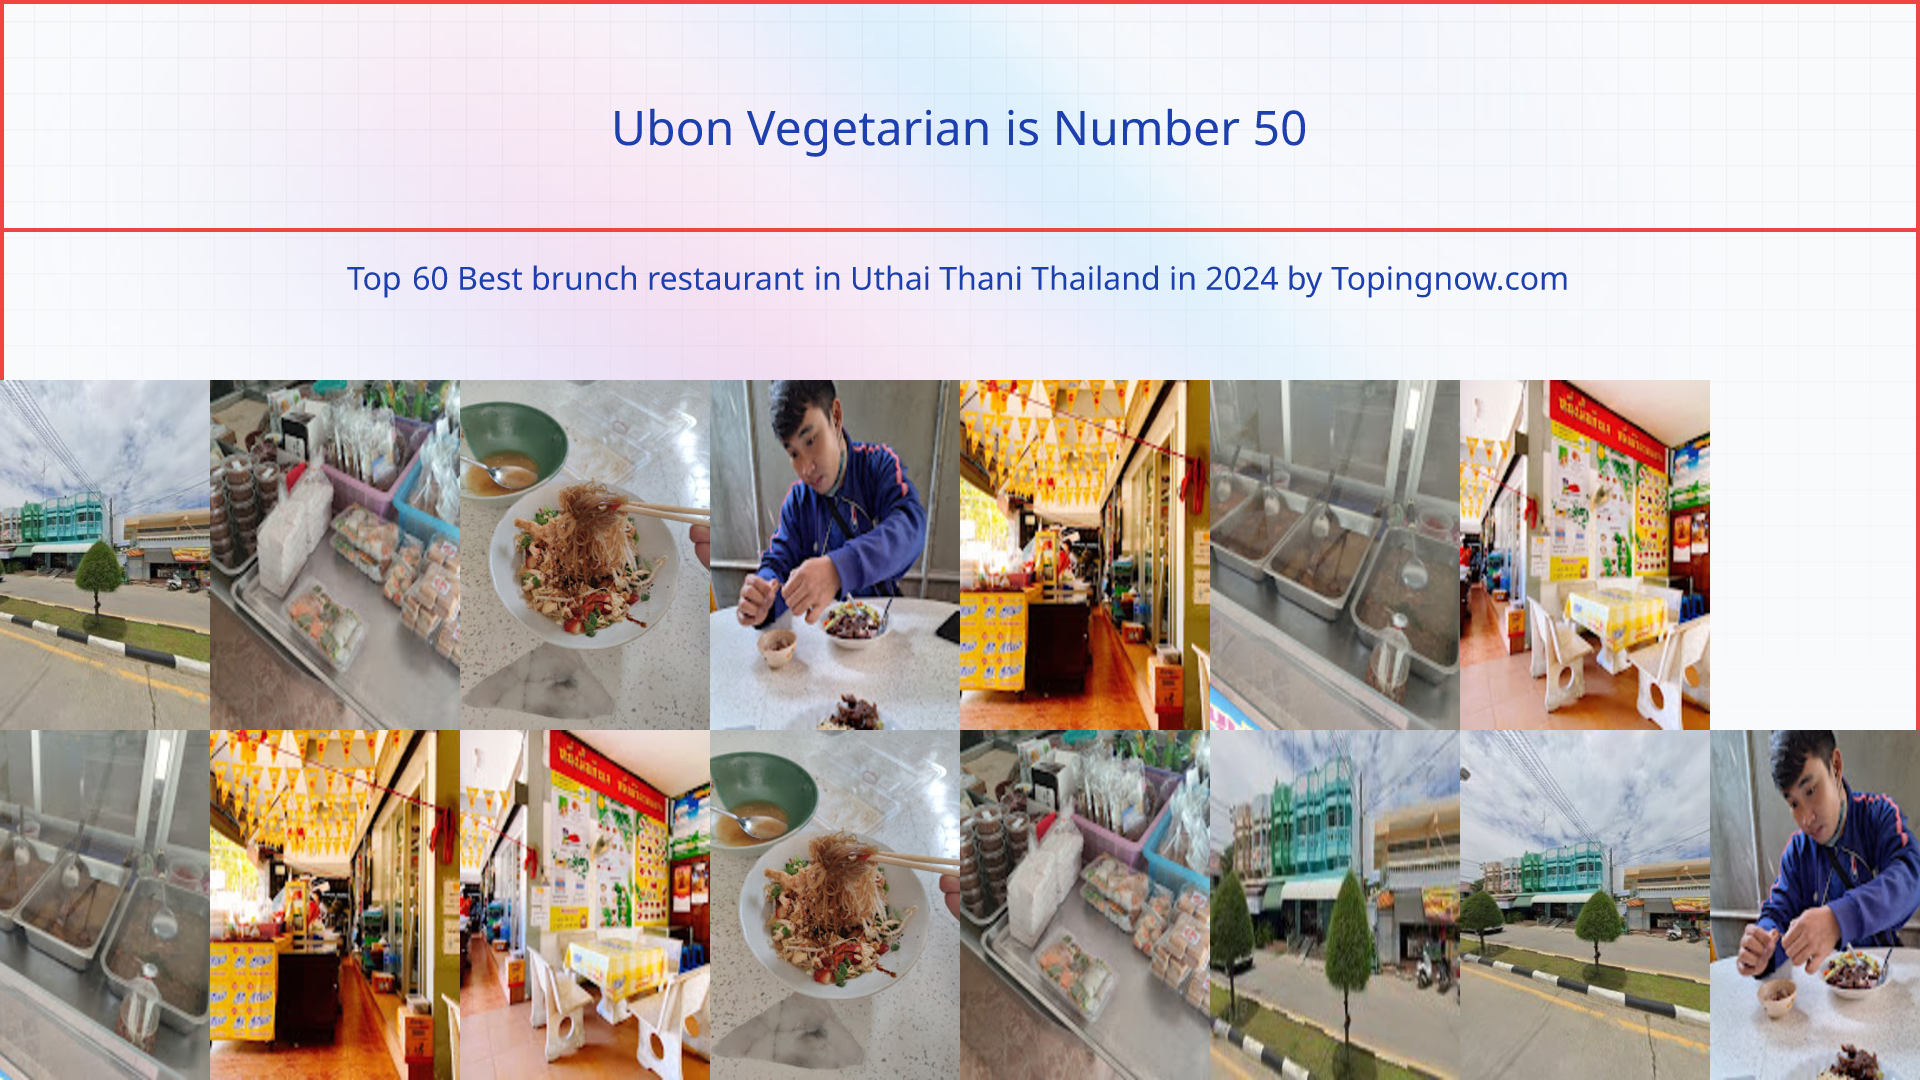 Ubon Vegetarian: Top 60 Best brunch restaurant in Uthai Thani Thailand in 2024